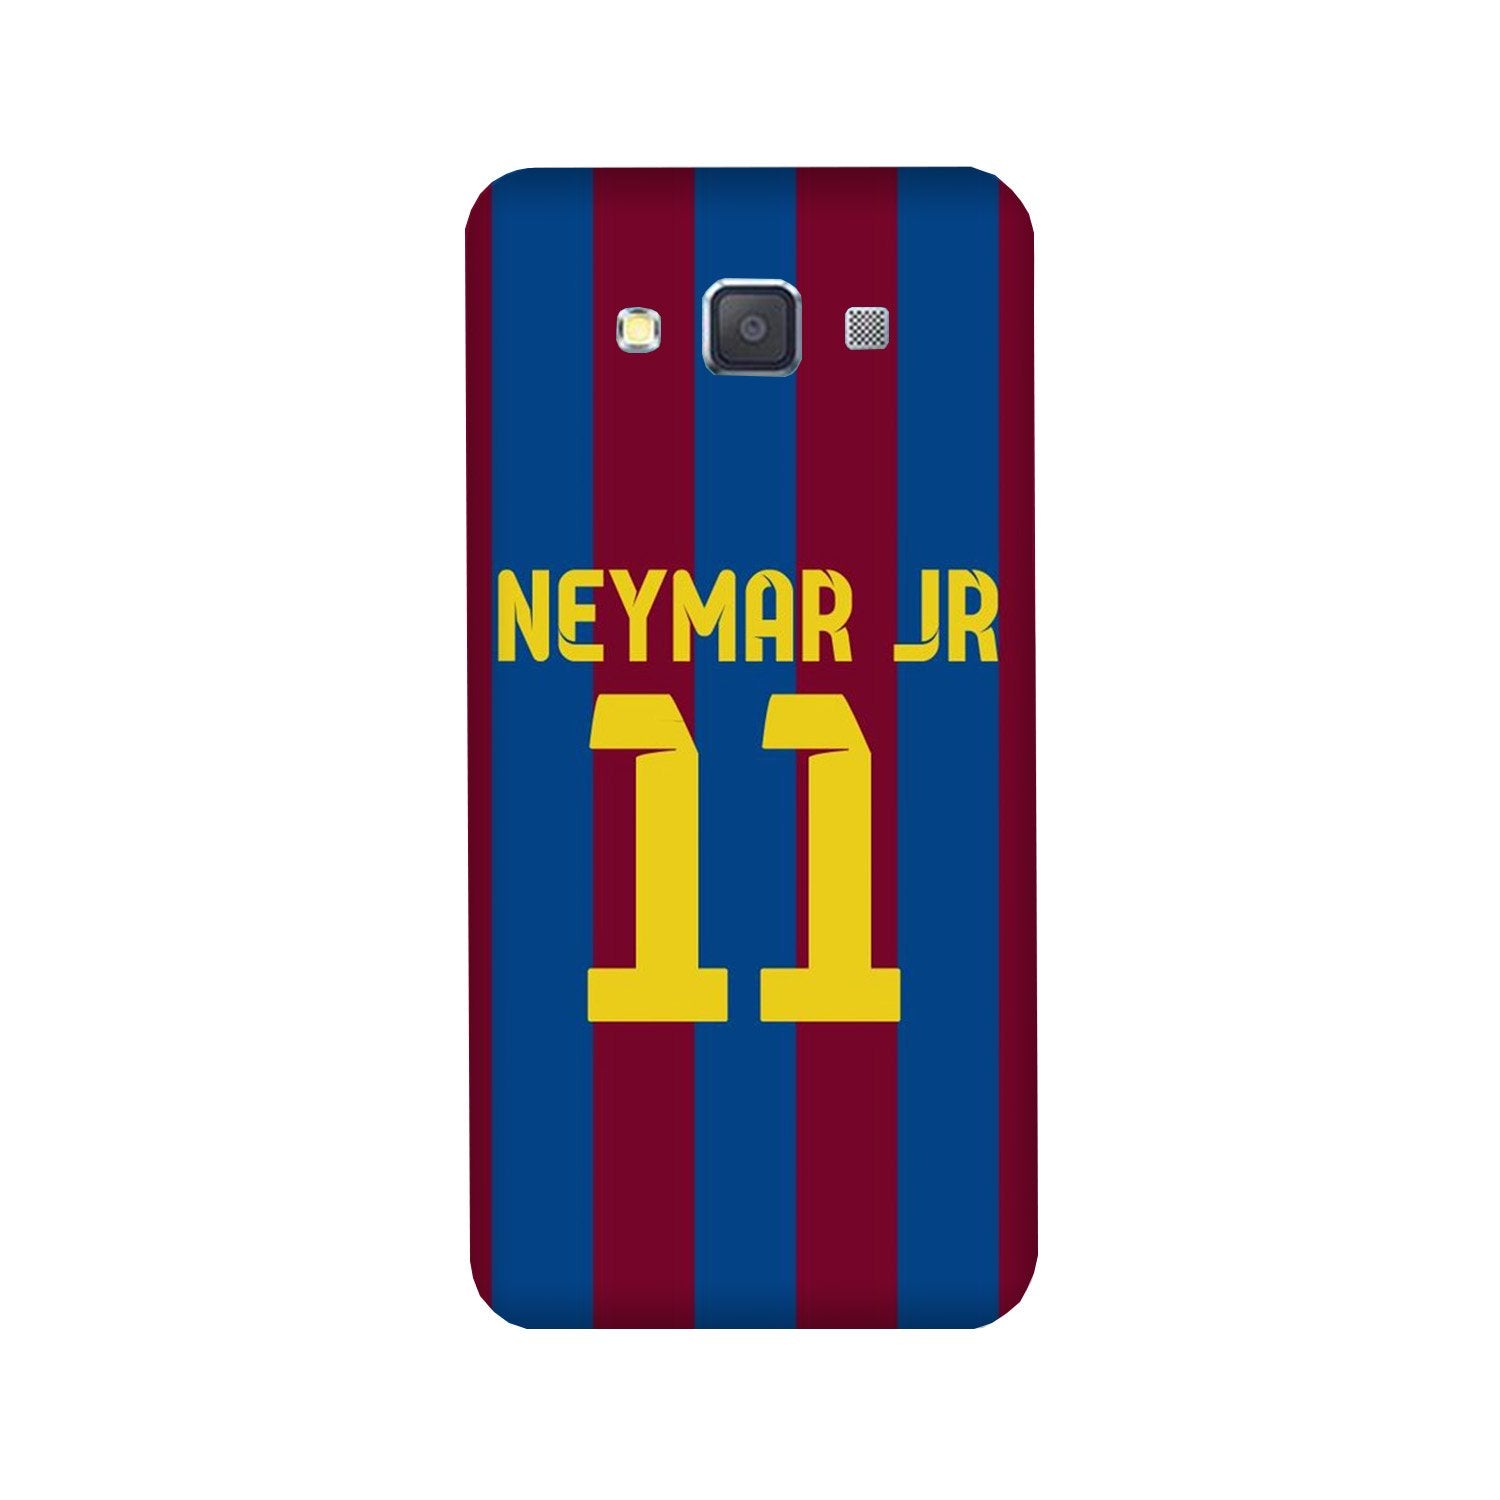 Neymar Jr Case for Galaxy Grand Max  (Design - 162)